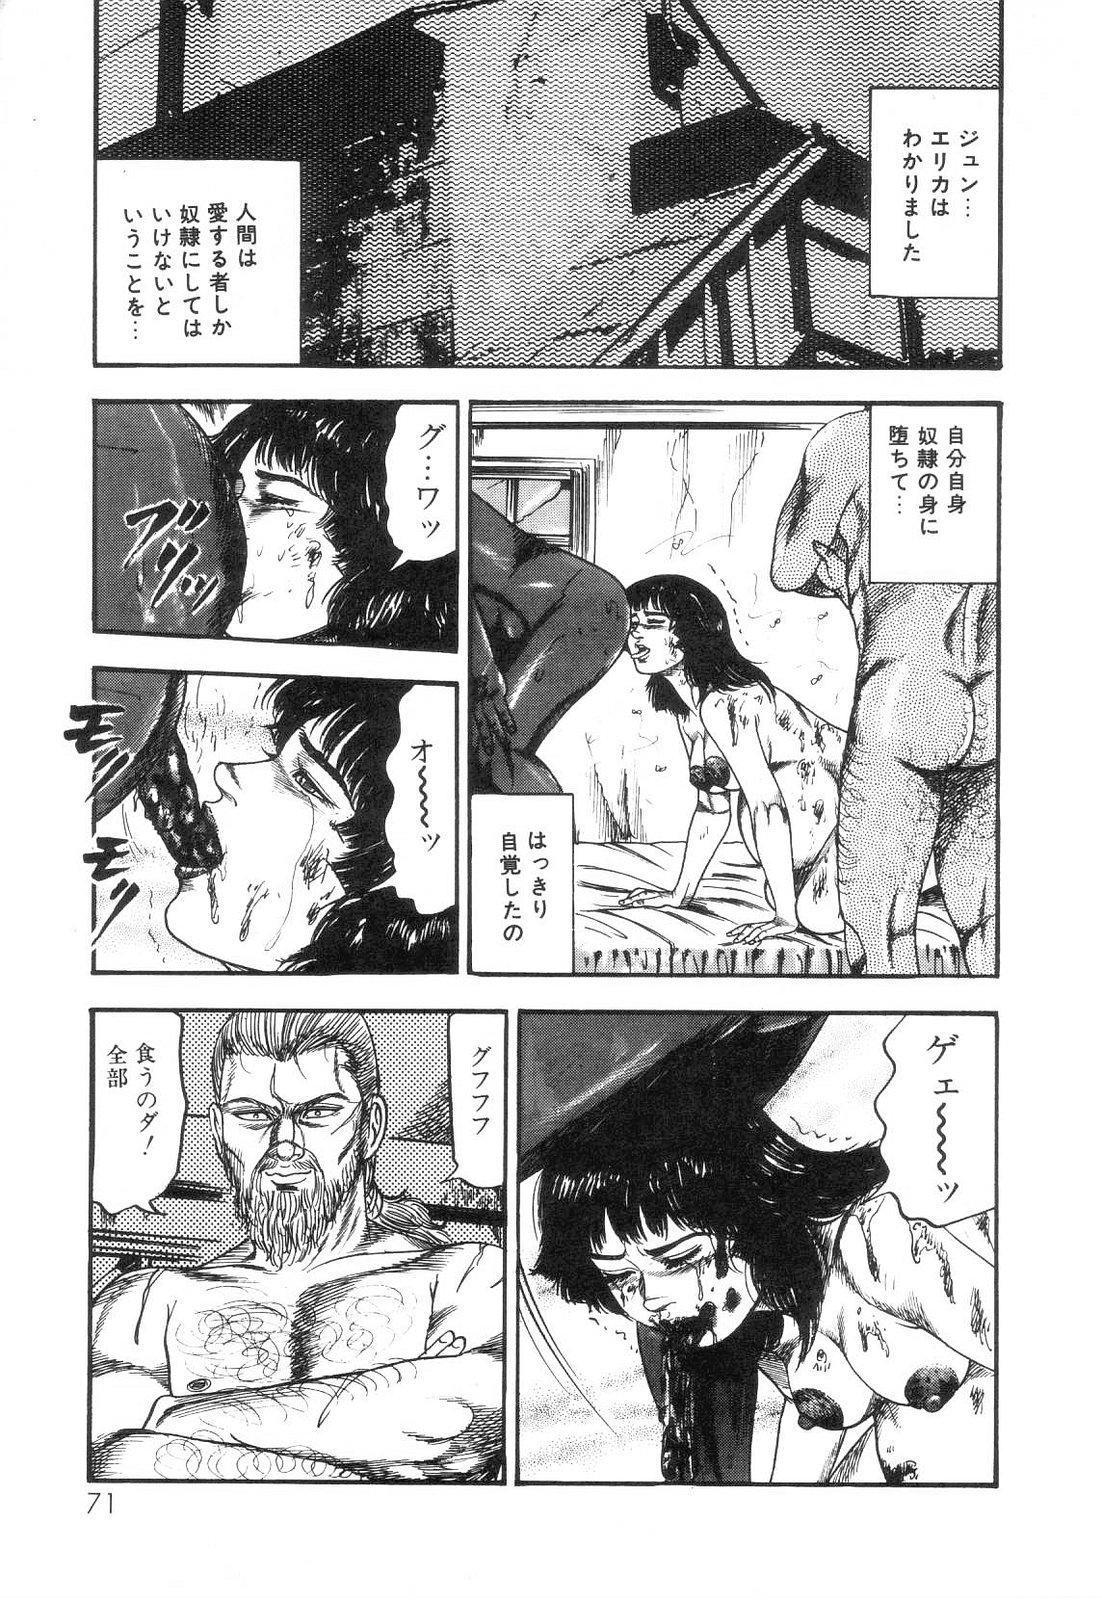 Shiro no Mokushiroku Vol. 6 - Juuai Erika no Shou 72